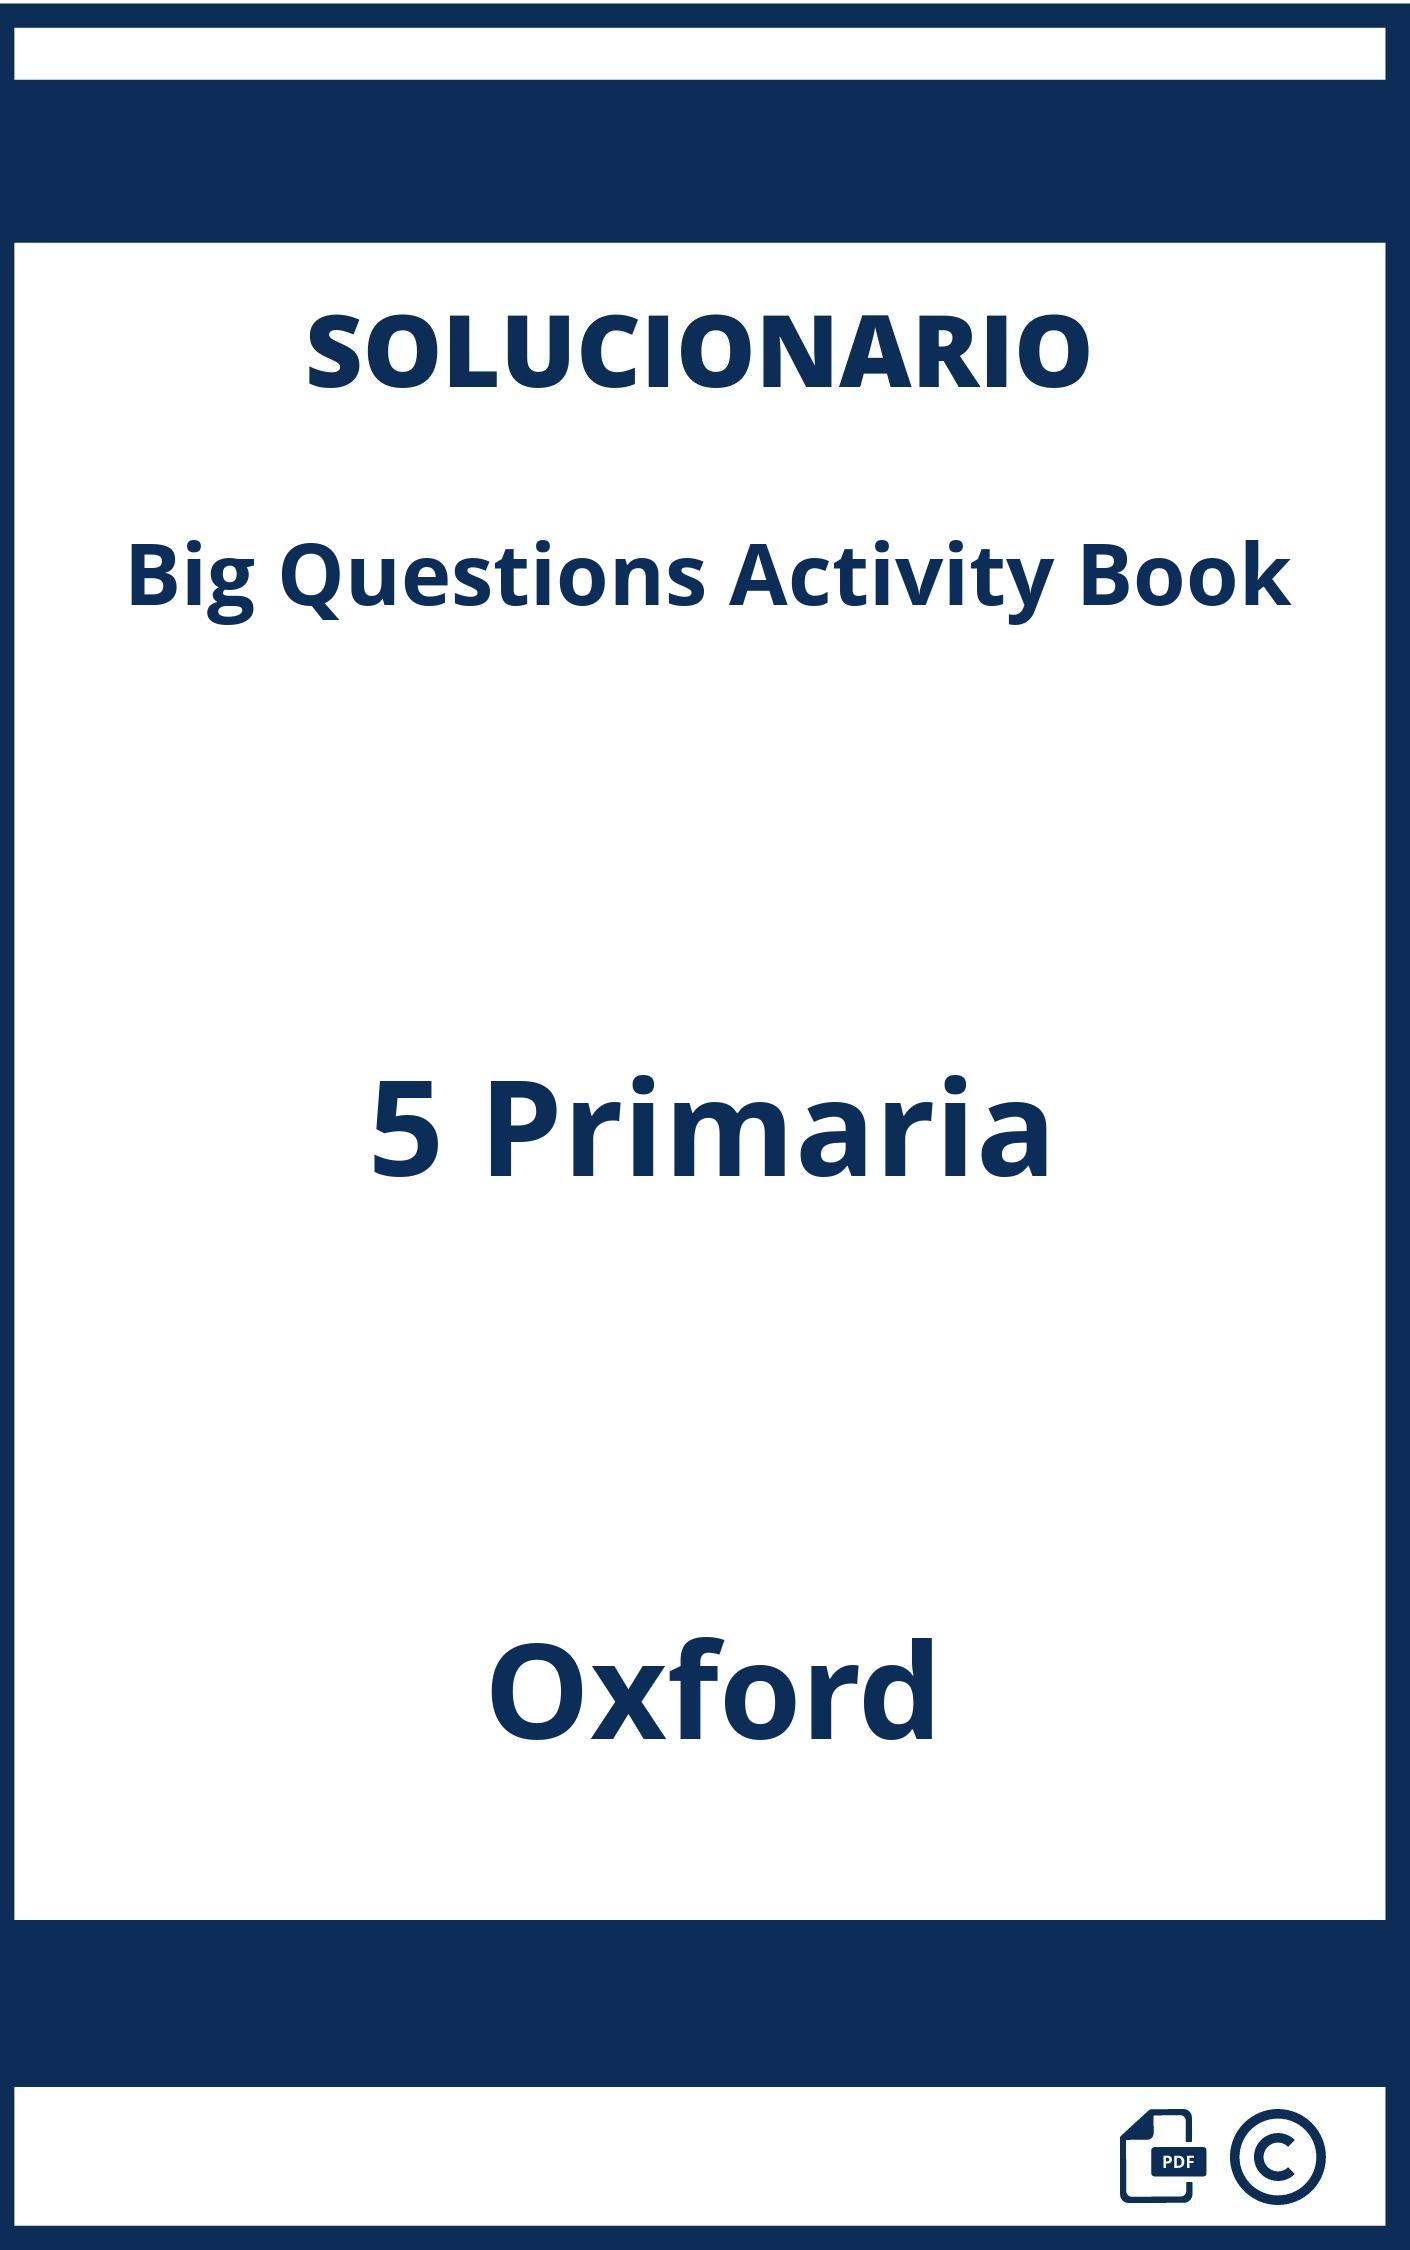 Solucionario Big Questions Activity Book 5 Primaria Oxford